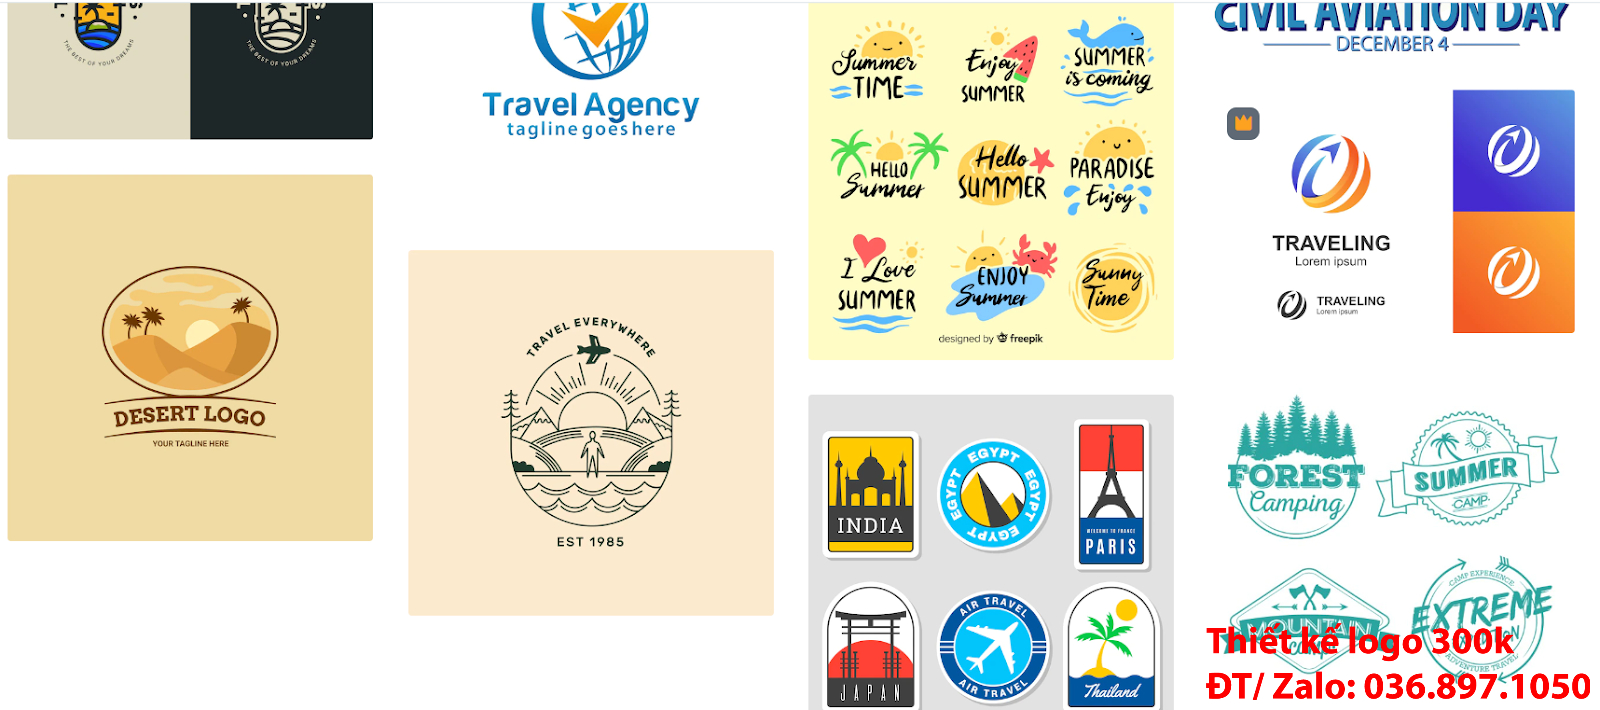 Mẫu Hình ảnh Logo công ty du lịch tour PNG và Vector giá rẻ đẹp tại TpHCM chất lượng từ 300k đến 500k